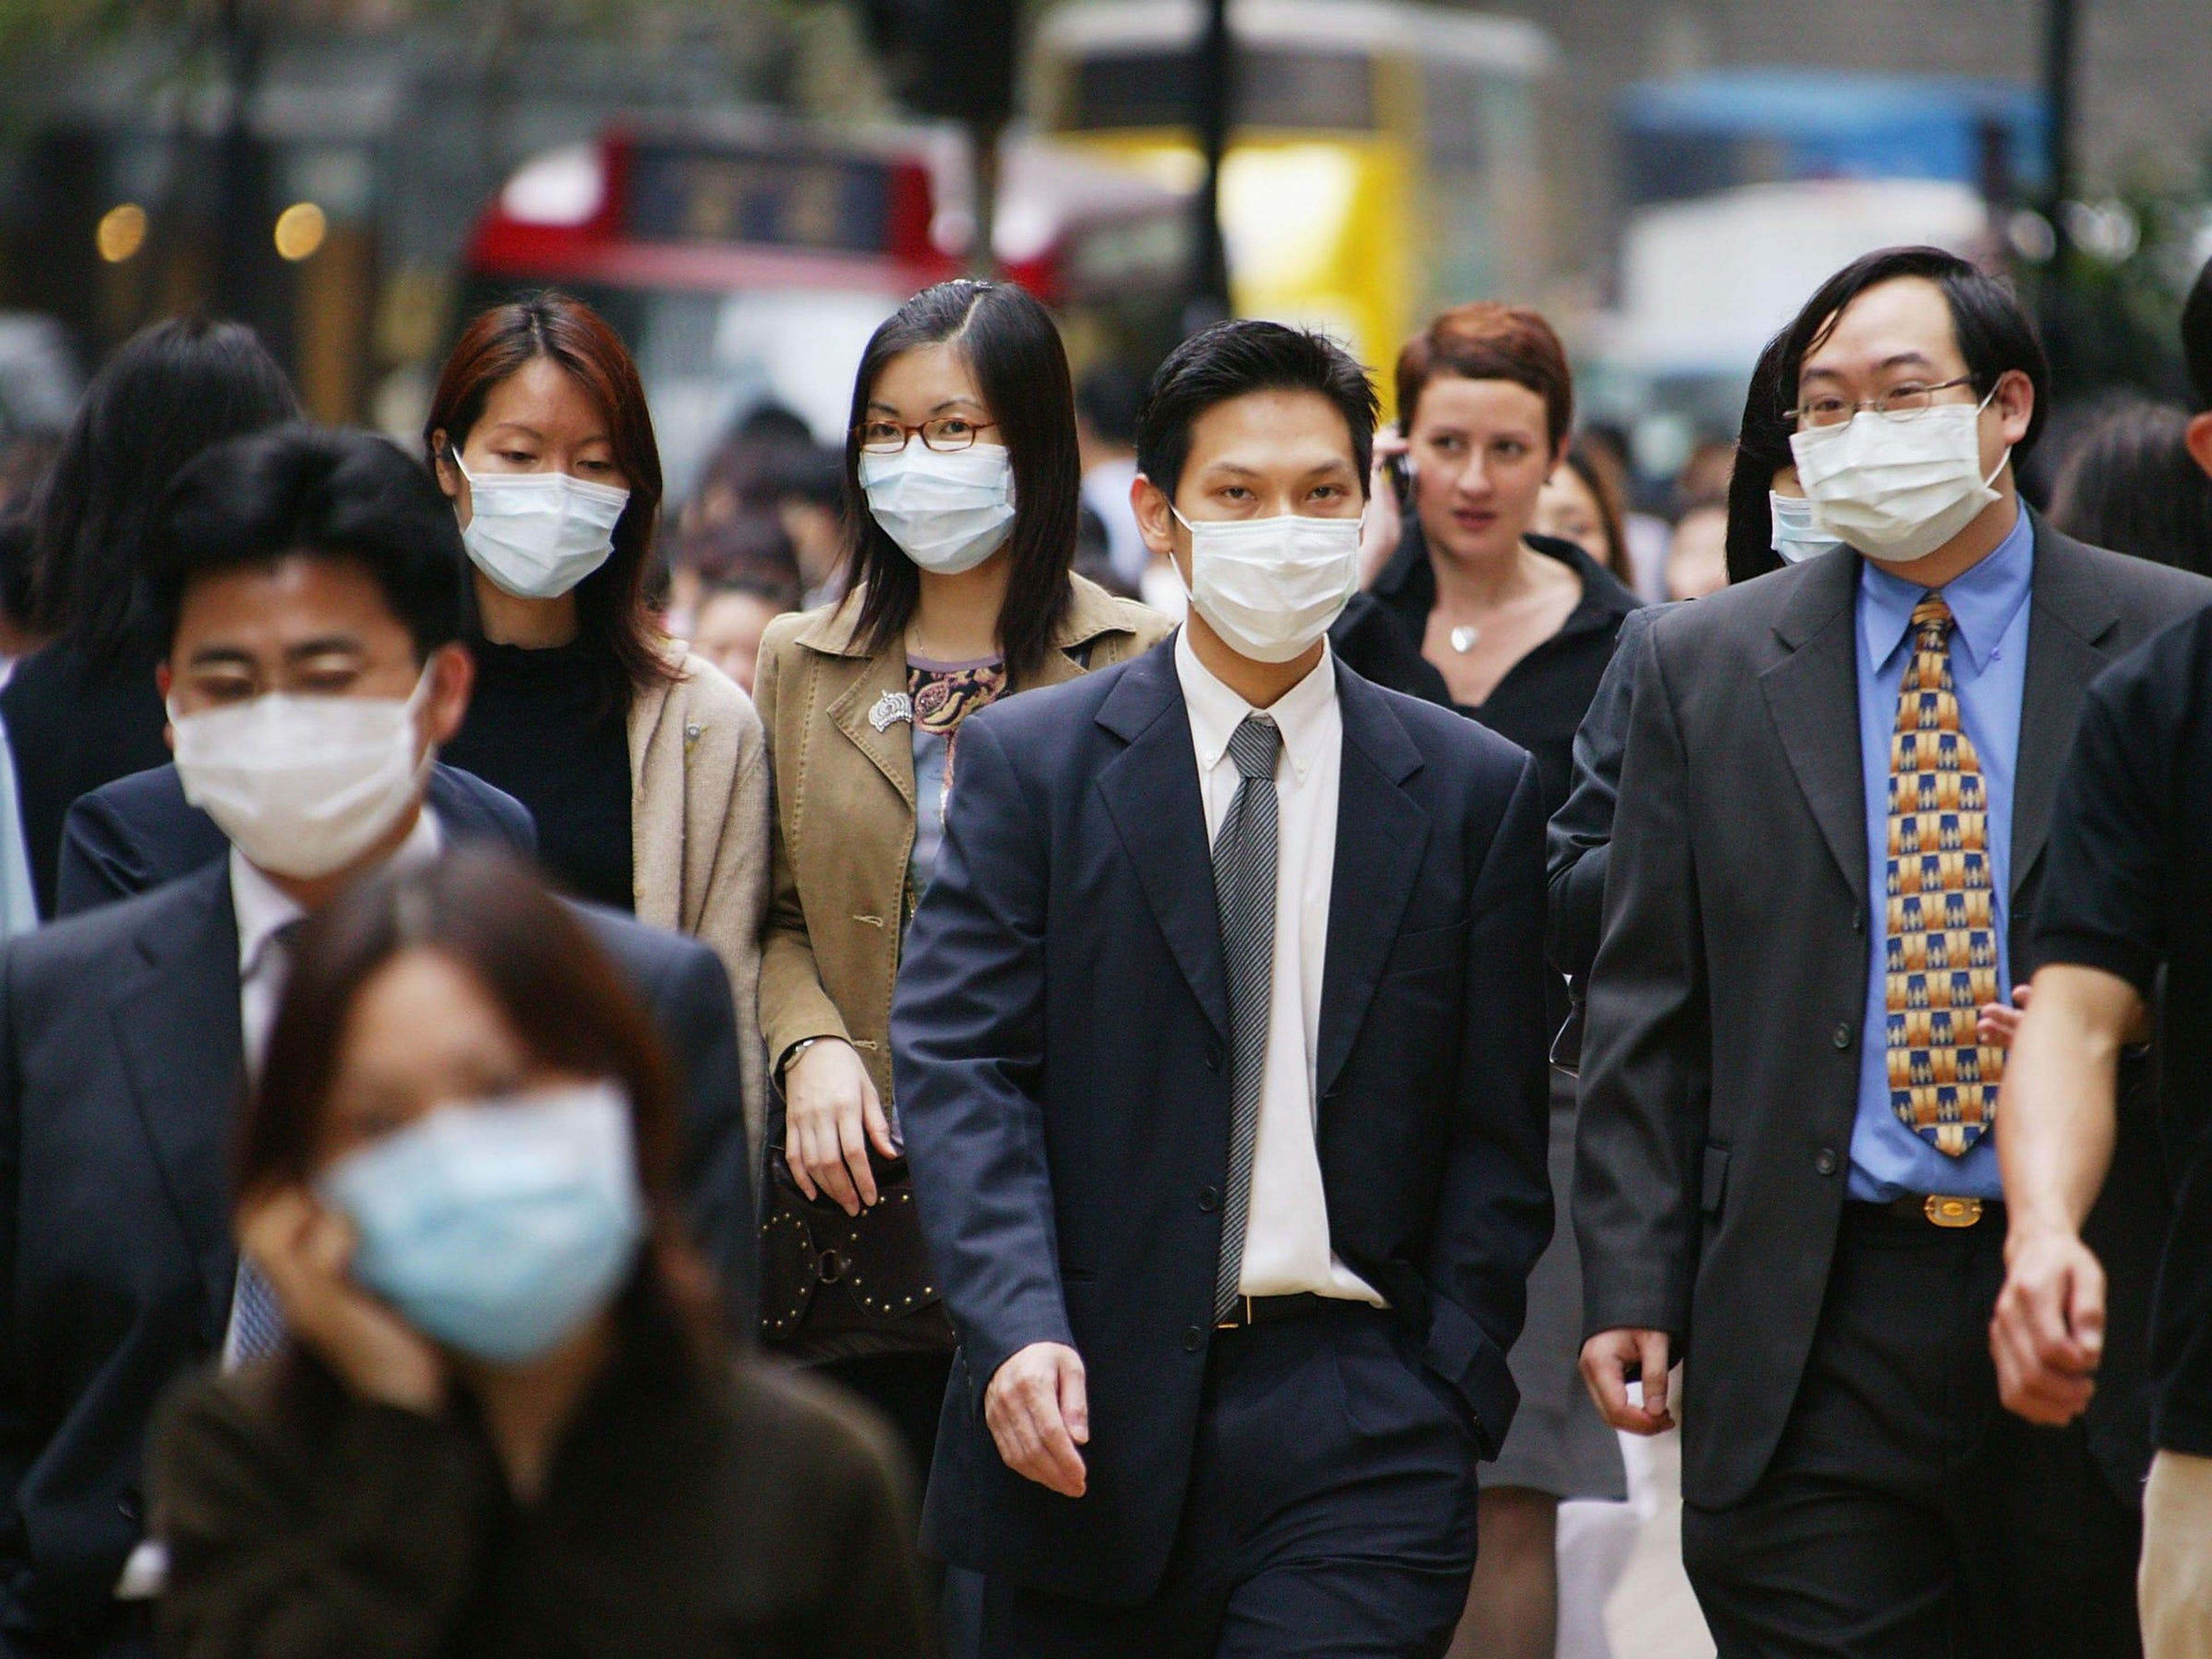 Болезни других стран. Массовые заболевания людей. Китайцы в масках. Человек в маске.